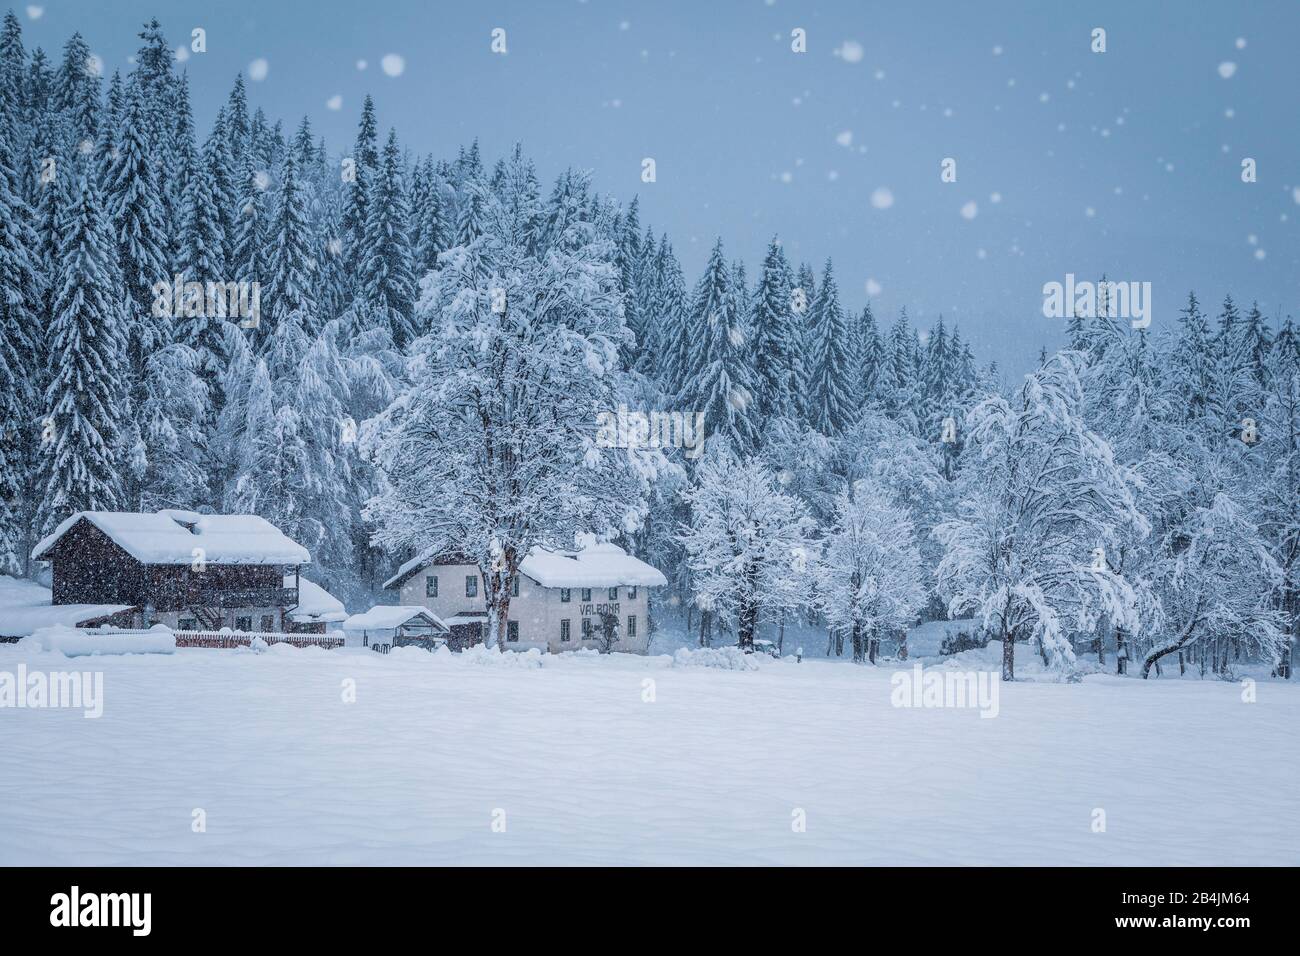 rural winter scenery in the ansiei valley, federavecchia, auronzo di cadore, dolomites, belluno, veneto, italy Stock Photo